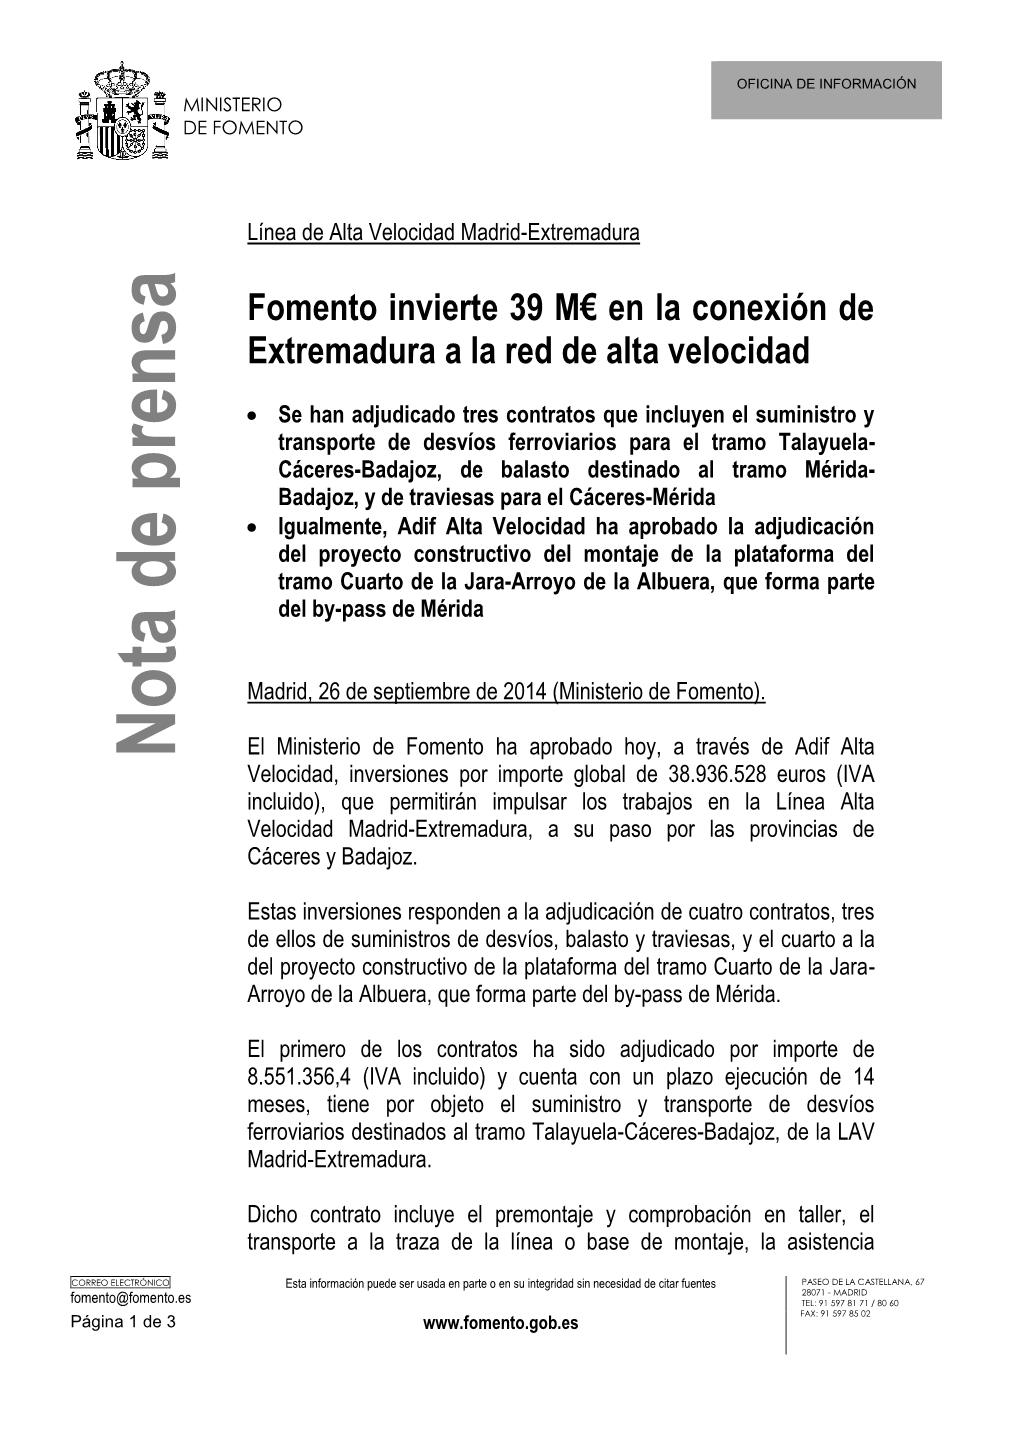 Fomento Invierte 39 M€ En La Conexión De Extremadura a La Red De Alta Velocidad